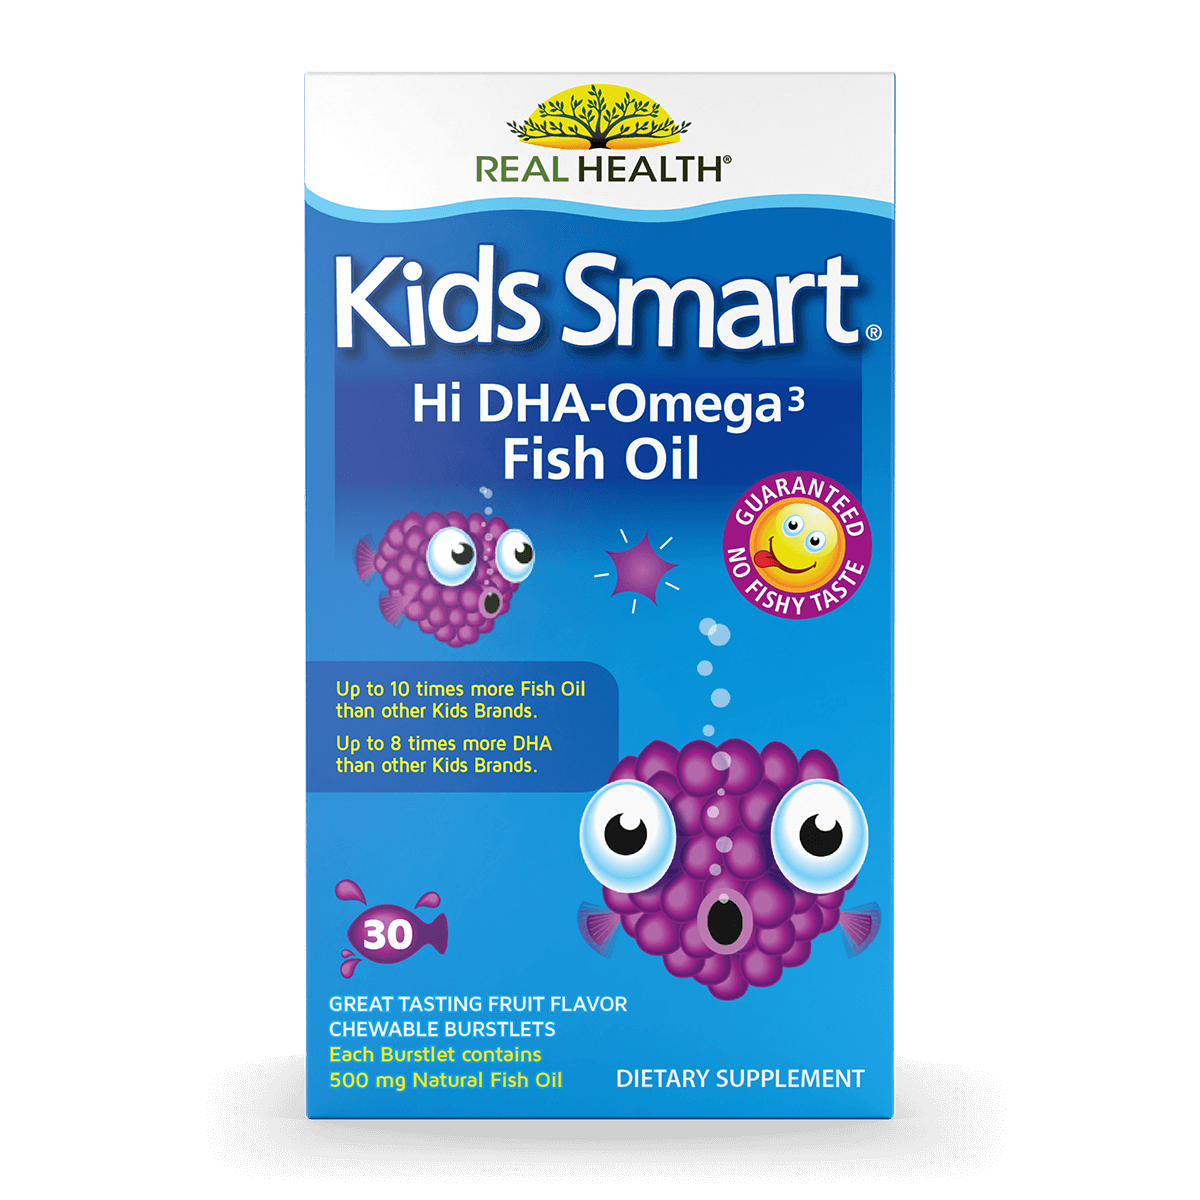 Kids Smart Hi DHA Omega-3 Fish Oil Chewable Burstlets – 30ct